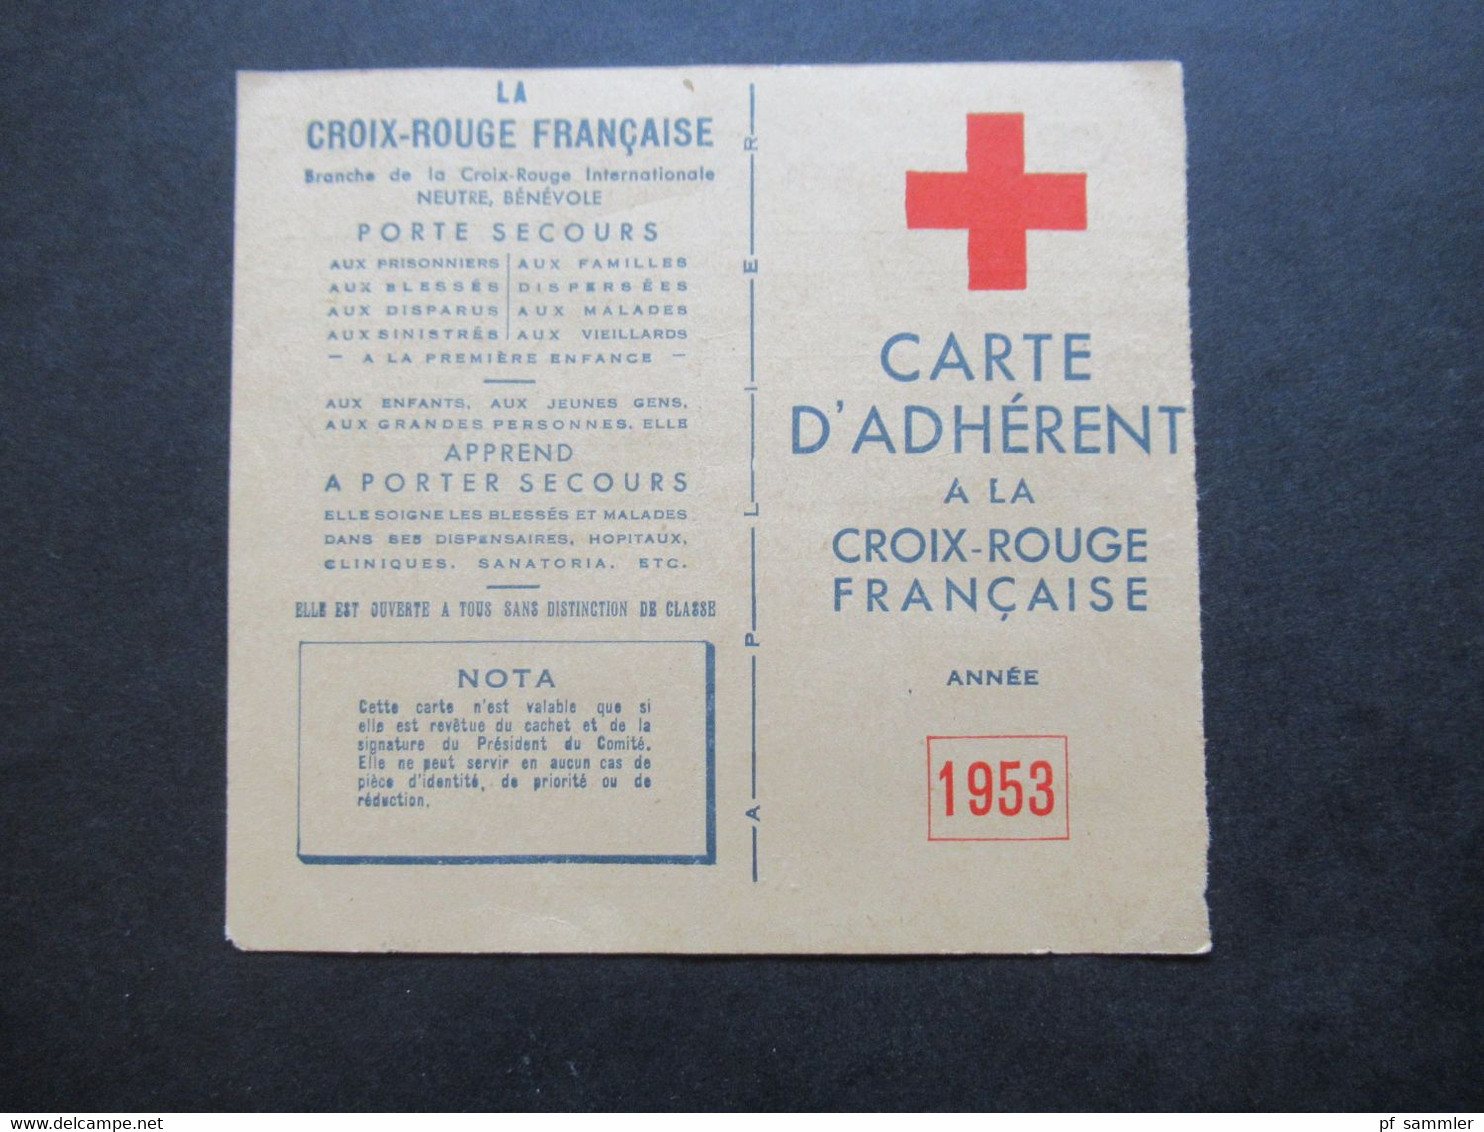 Frankreich 1953 Vignette Auf Carte D'Adherent Croix Rouge Francaise Mit Stempel Und Signe Le President Du Comité - Erinnofilie